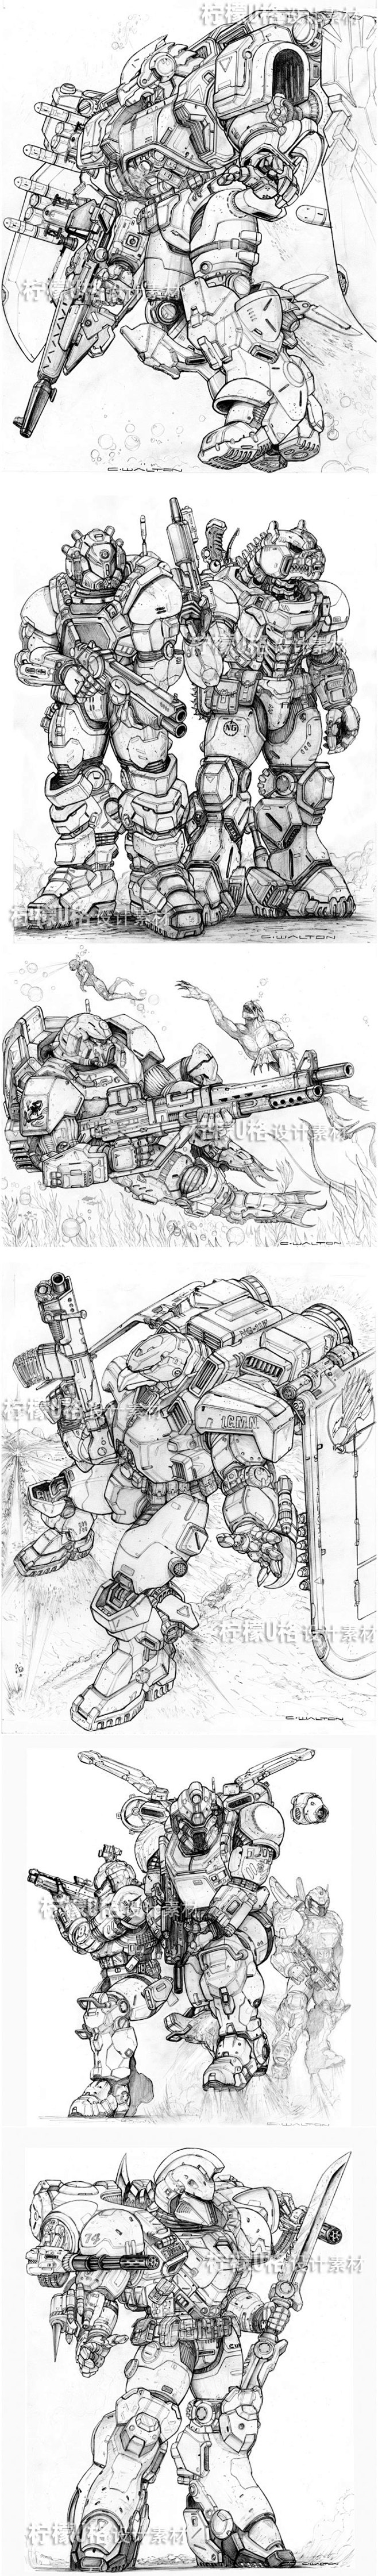 164手绘线稿素材 欧美游戏科幻机甲战士...